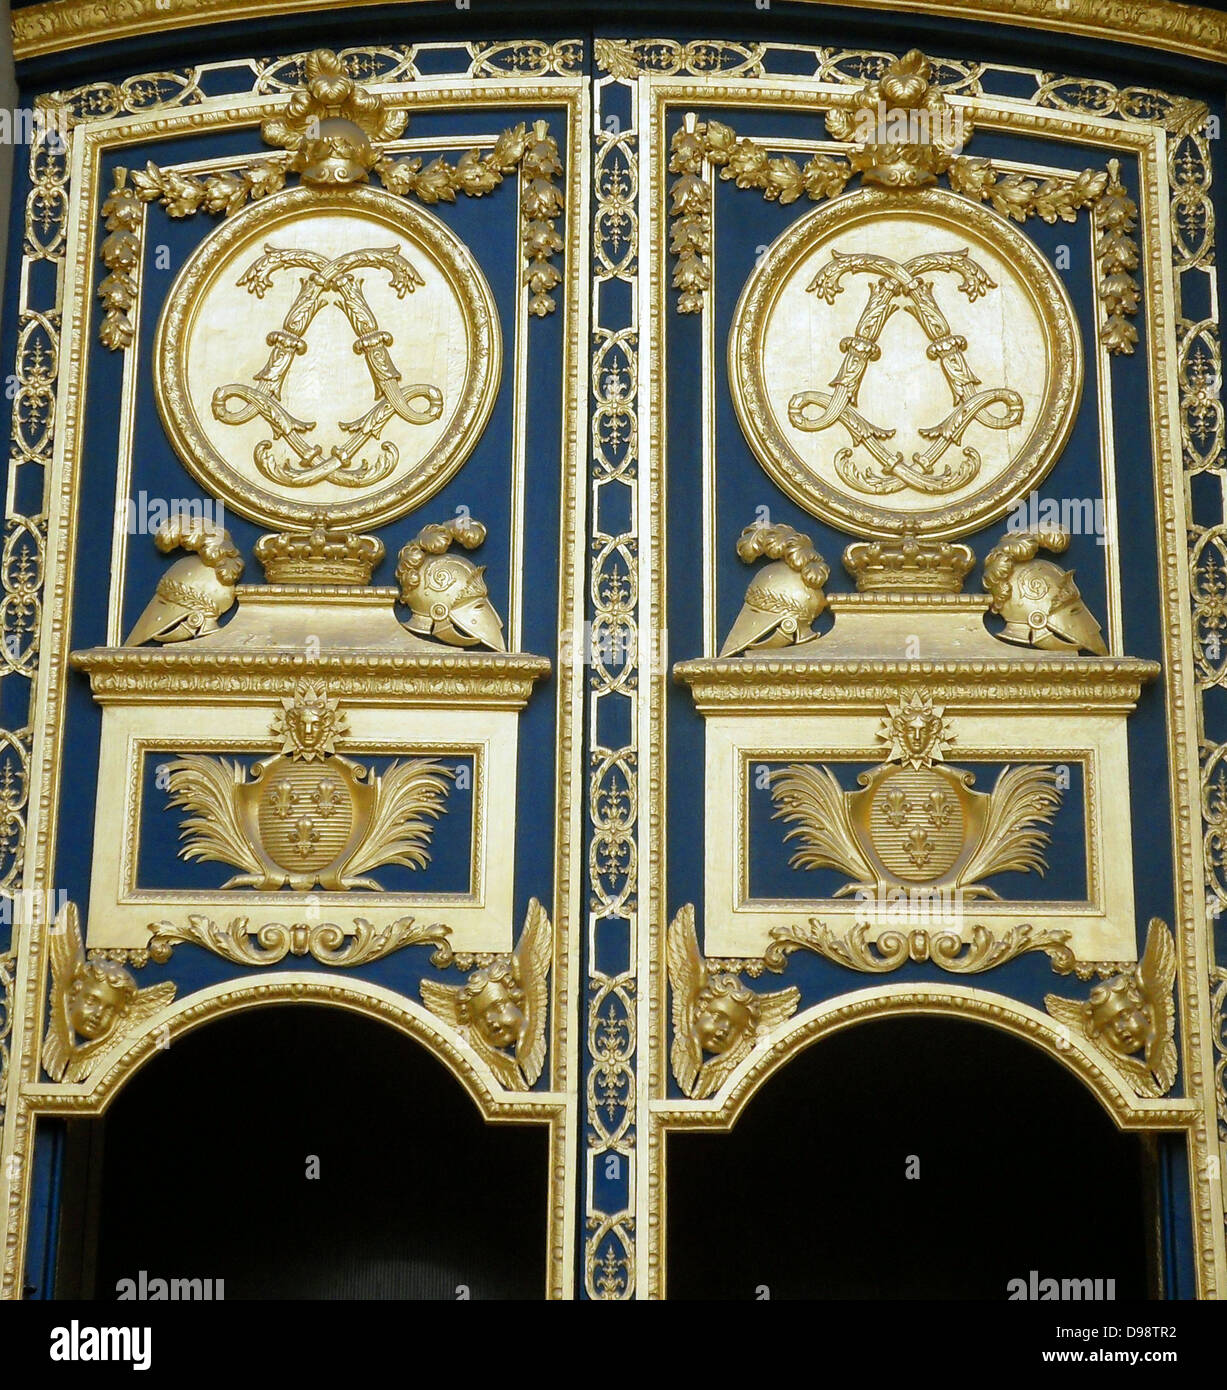 Les Invallides un complesso di edifici nel settimo arrondissement di Parigi, Francia, contenente i musei e i monumenti, relative alla storia militare della Francia. porte della Basilica che ospita il sarcofago di Napoleone I Foto Stock